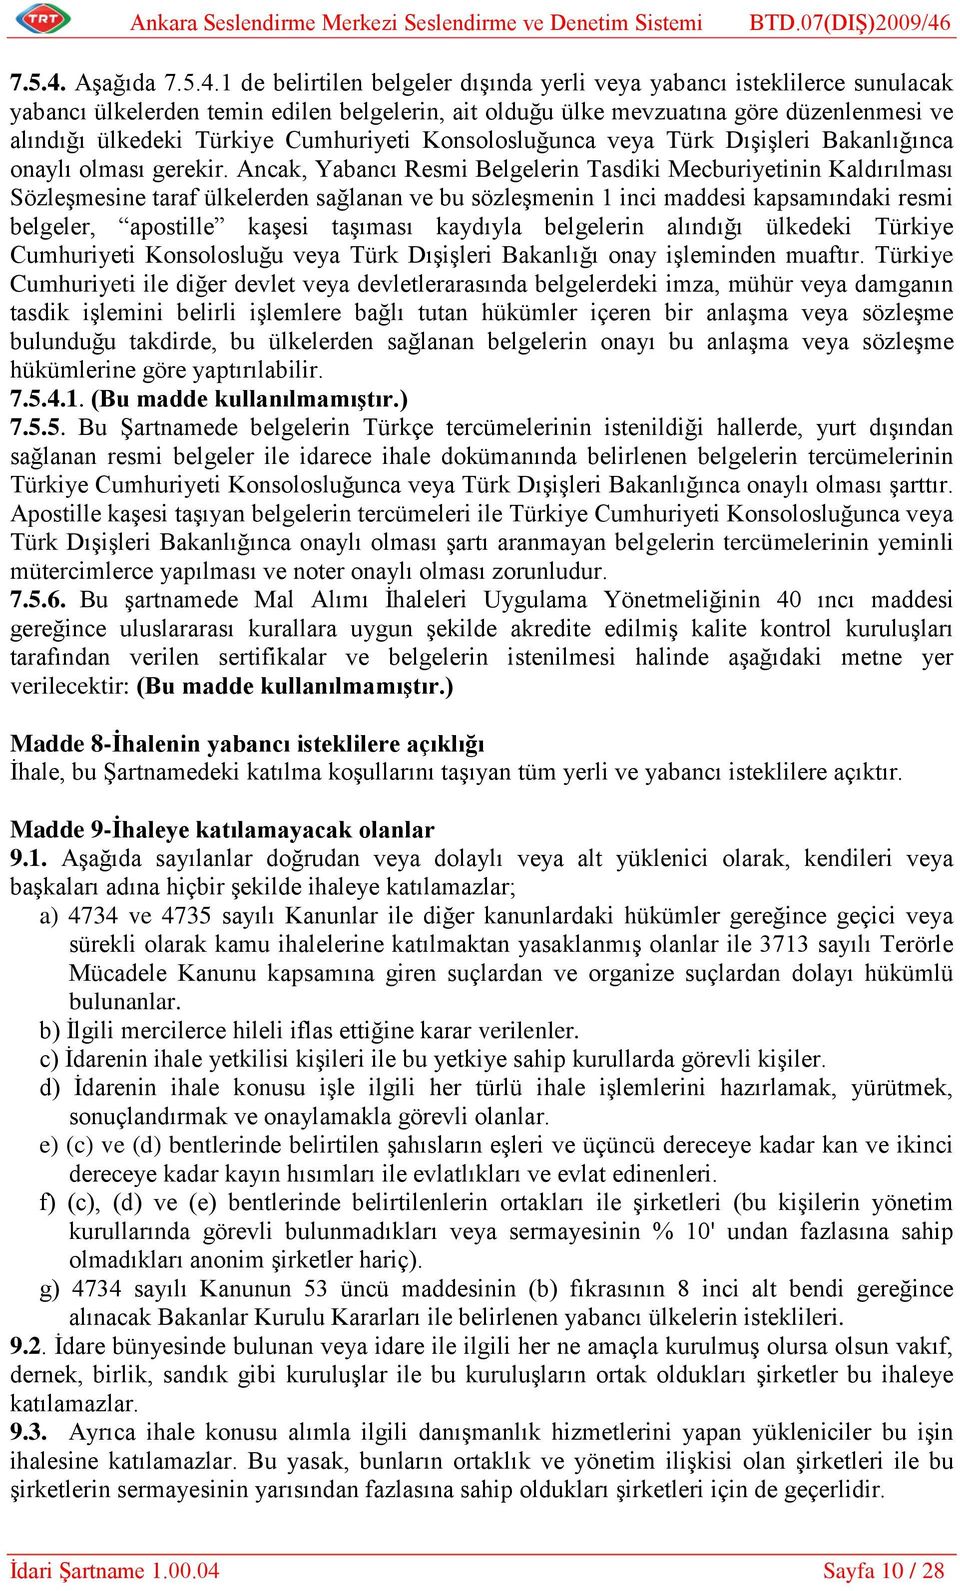 Türkiye Cumhuriyeti Konsolosluğunca veya Türk Dışişleri Bakanlığınca onaylı olması gerekir.